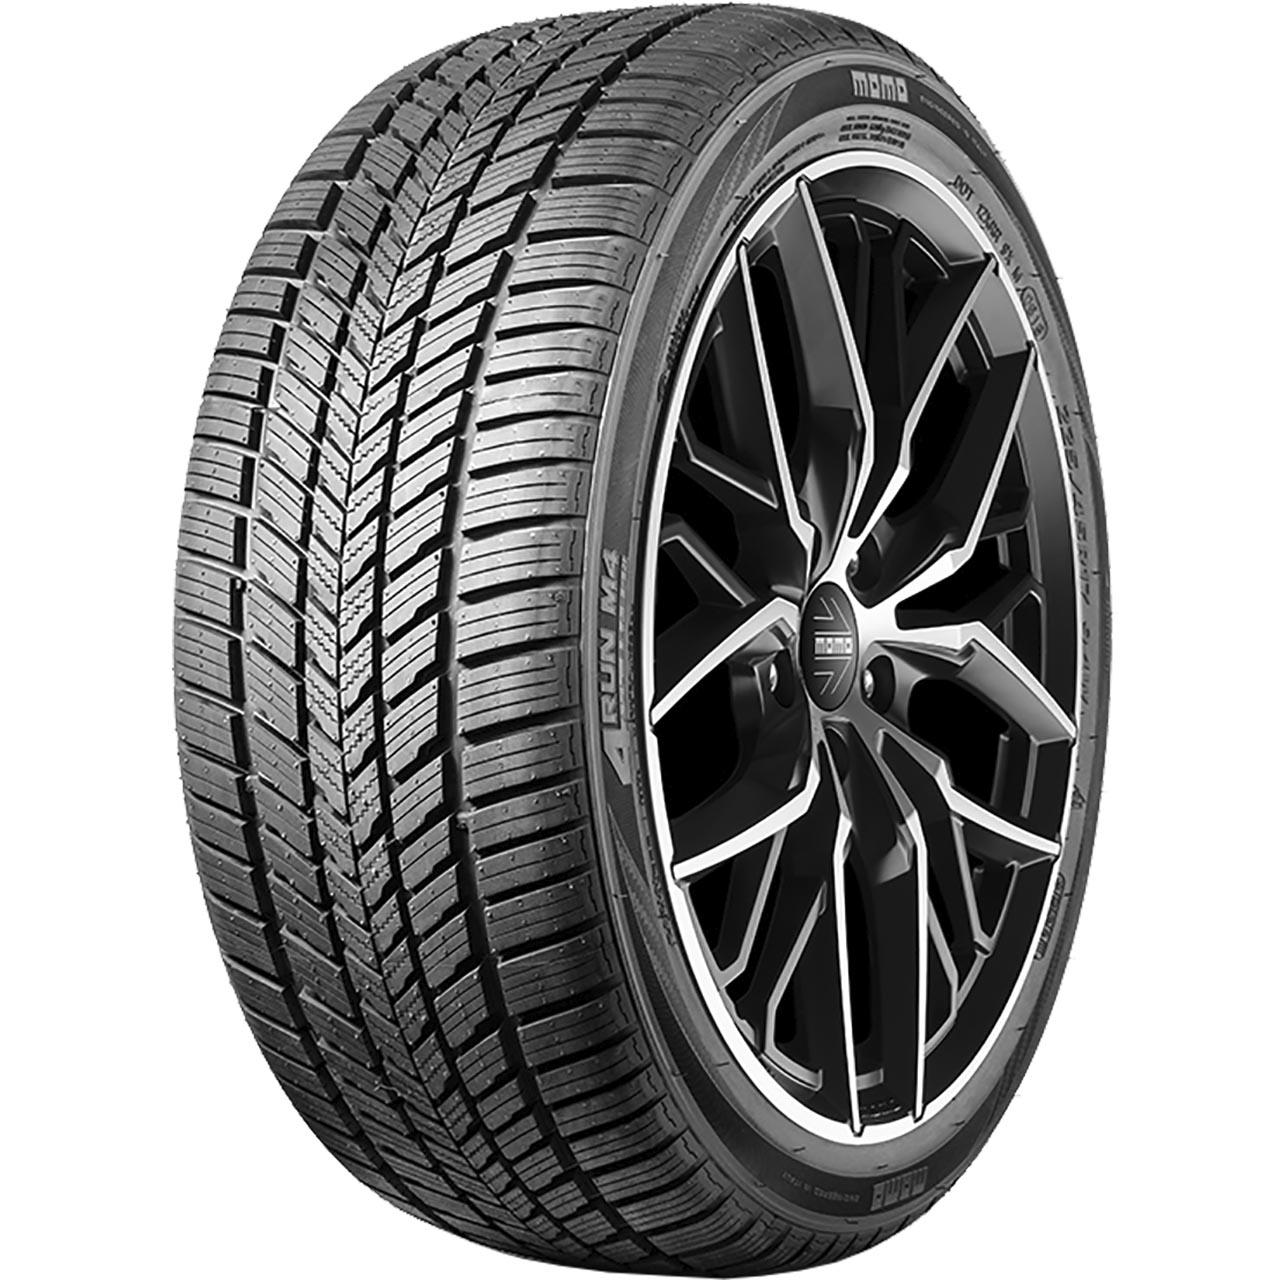 Momo Tire M 4 Four Season 155/70R13 75T